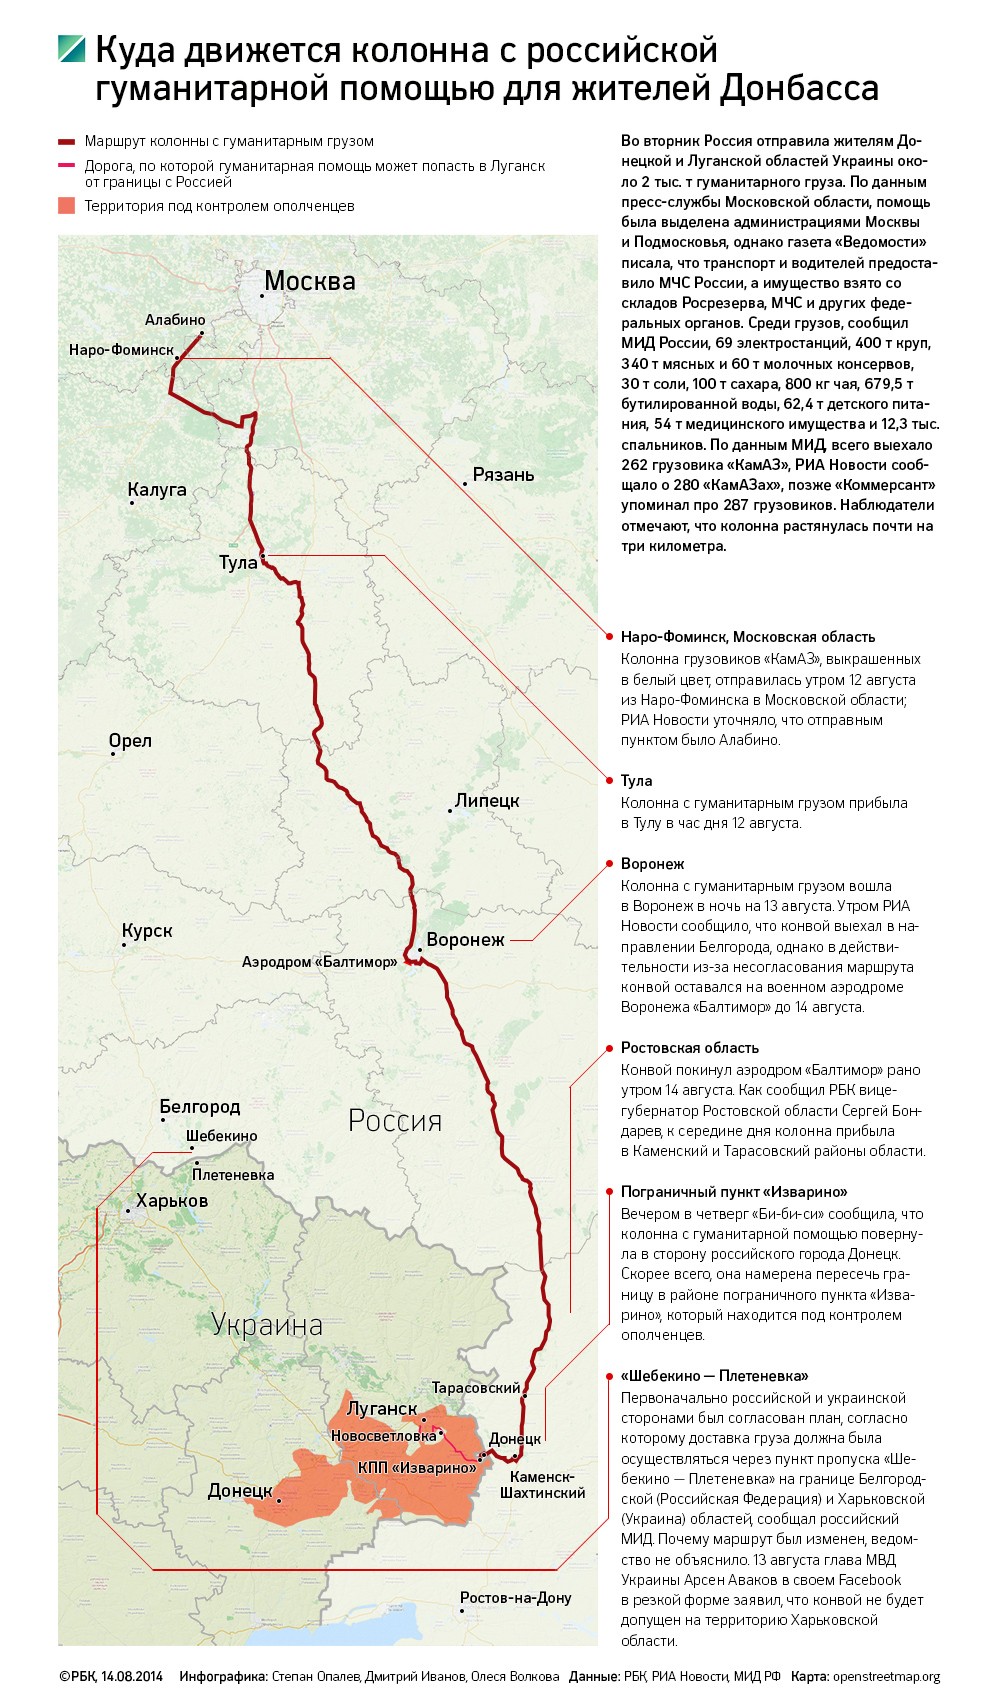 СМИ сообщили о пересечении границы Украины российской бронетехникой